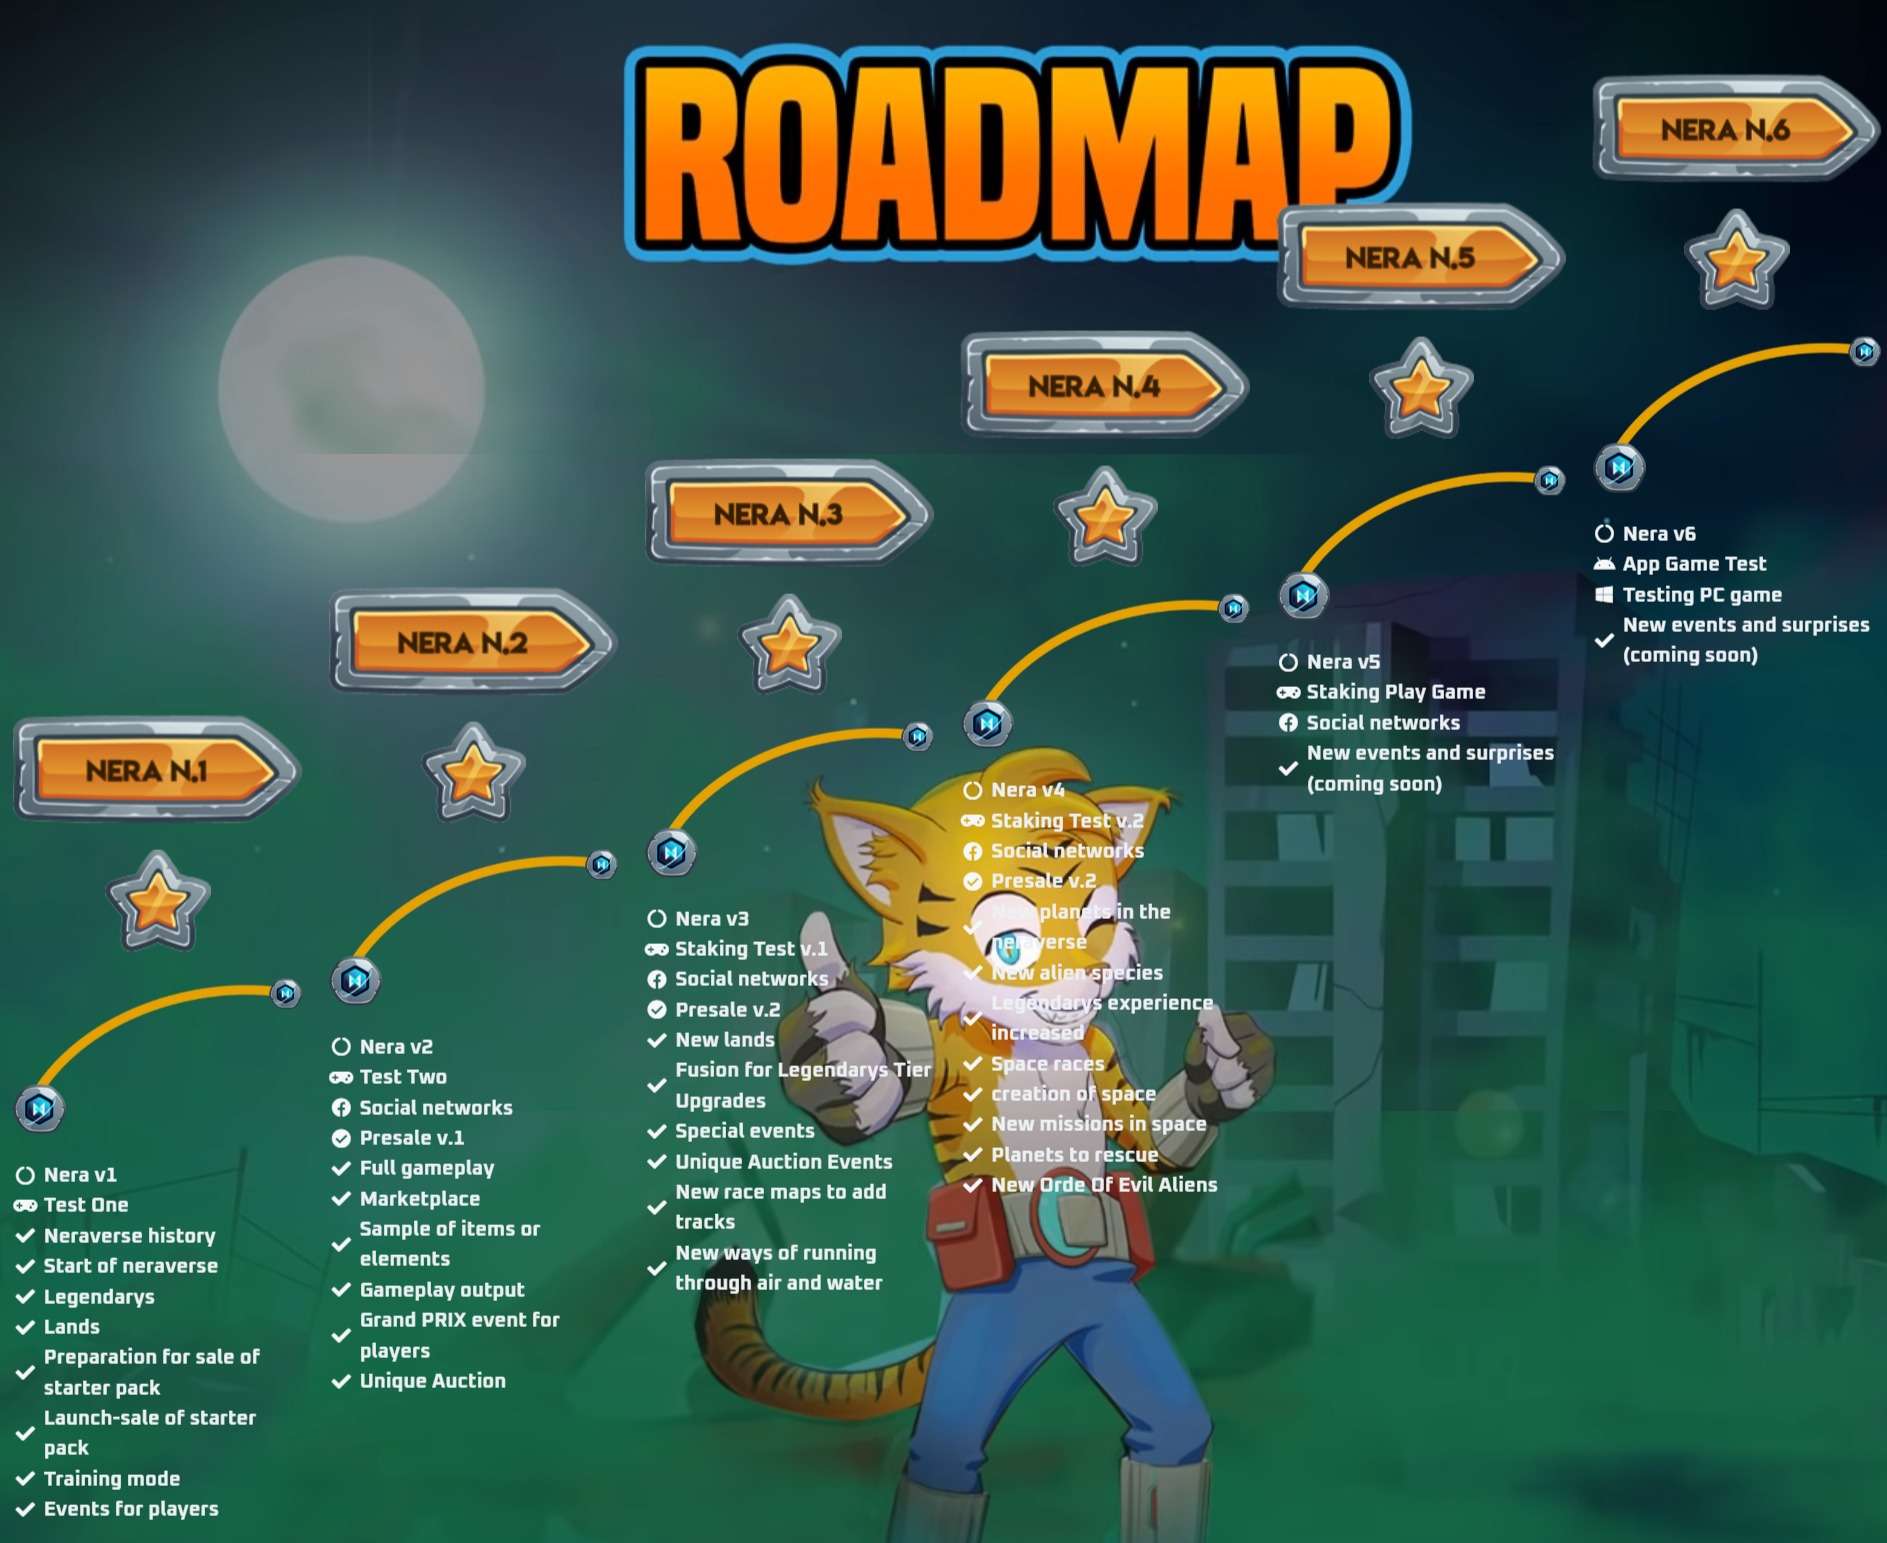 Roadmap